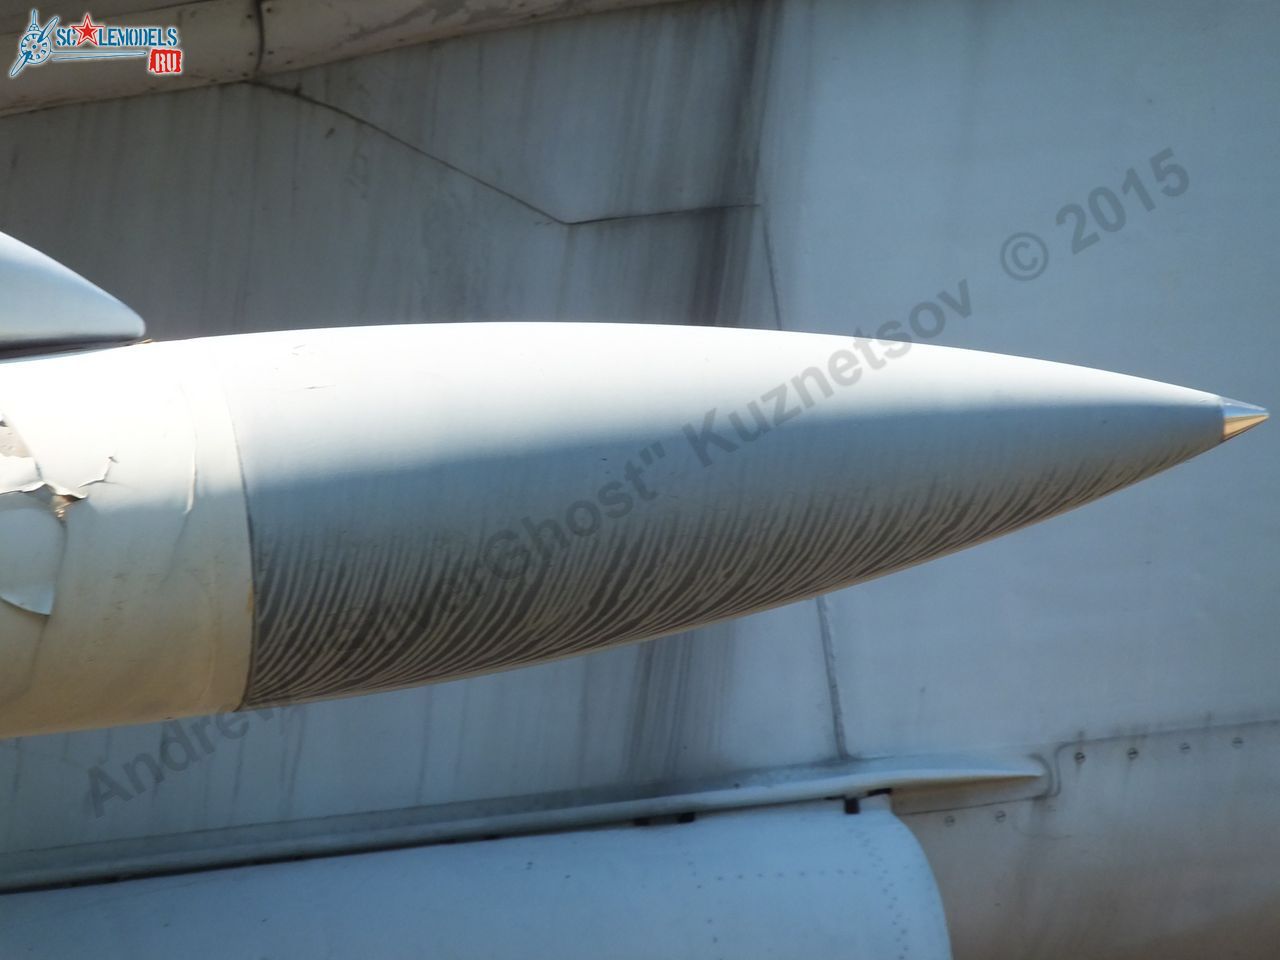 Kh-58 missile_0007.jpg